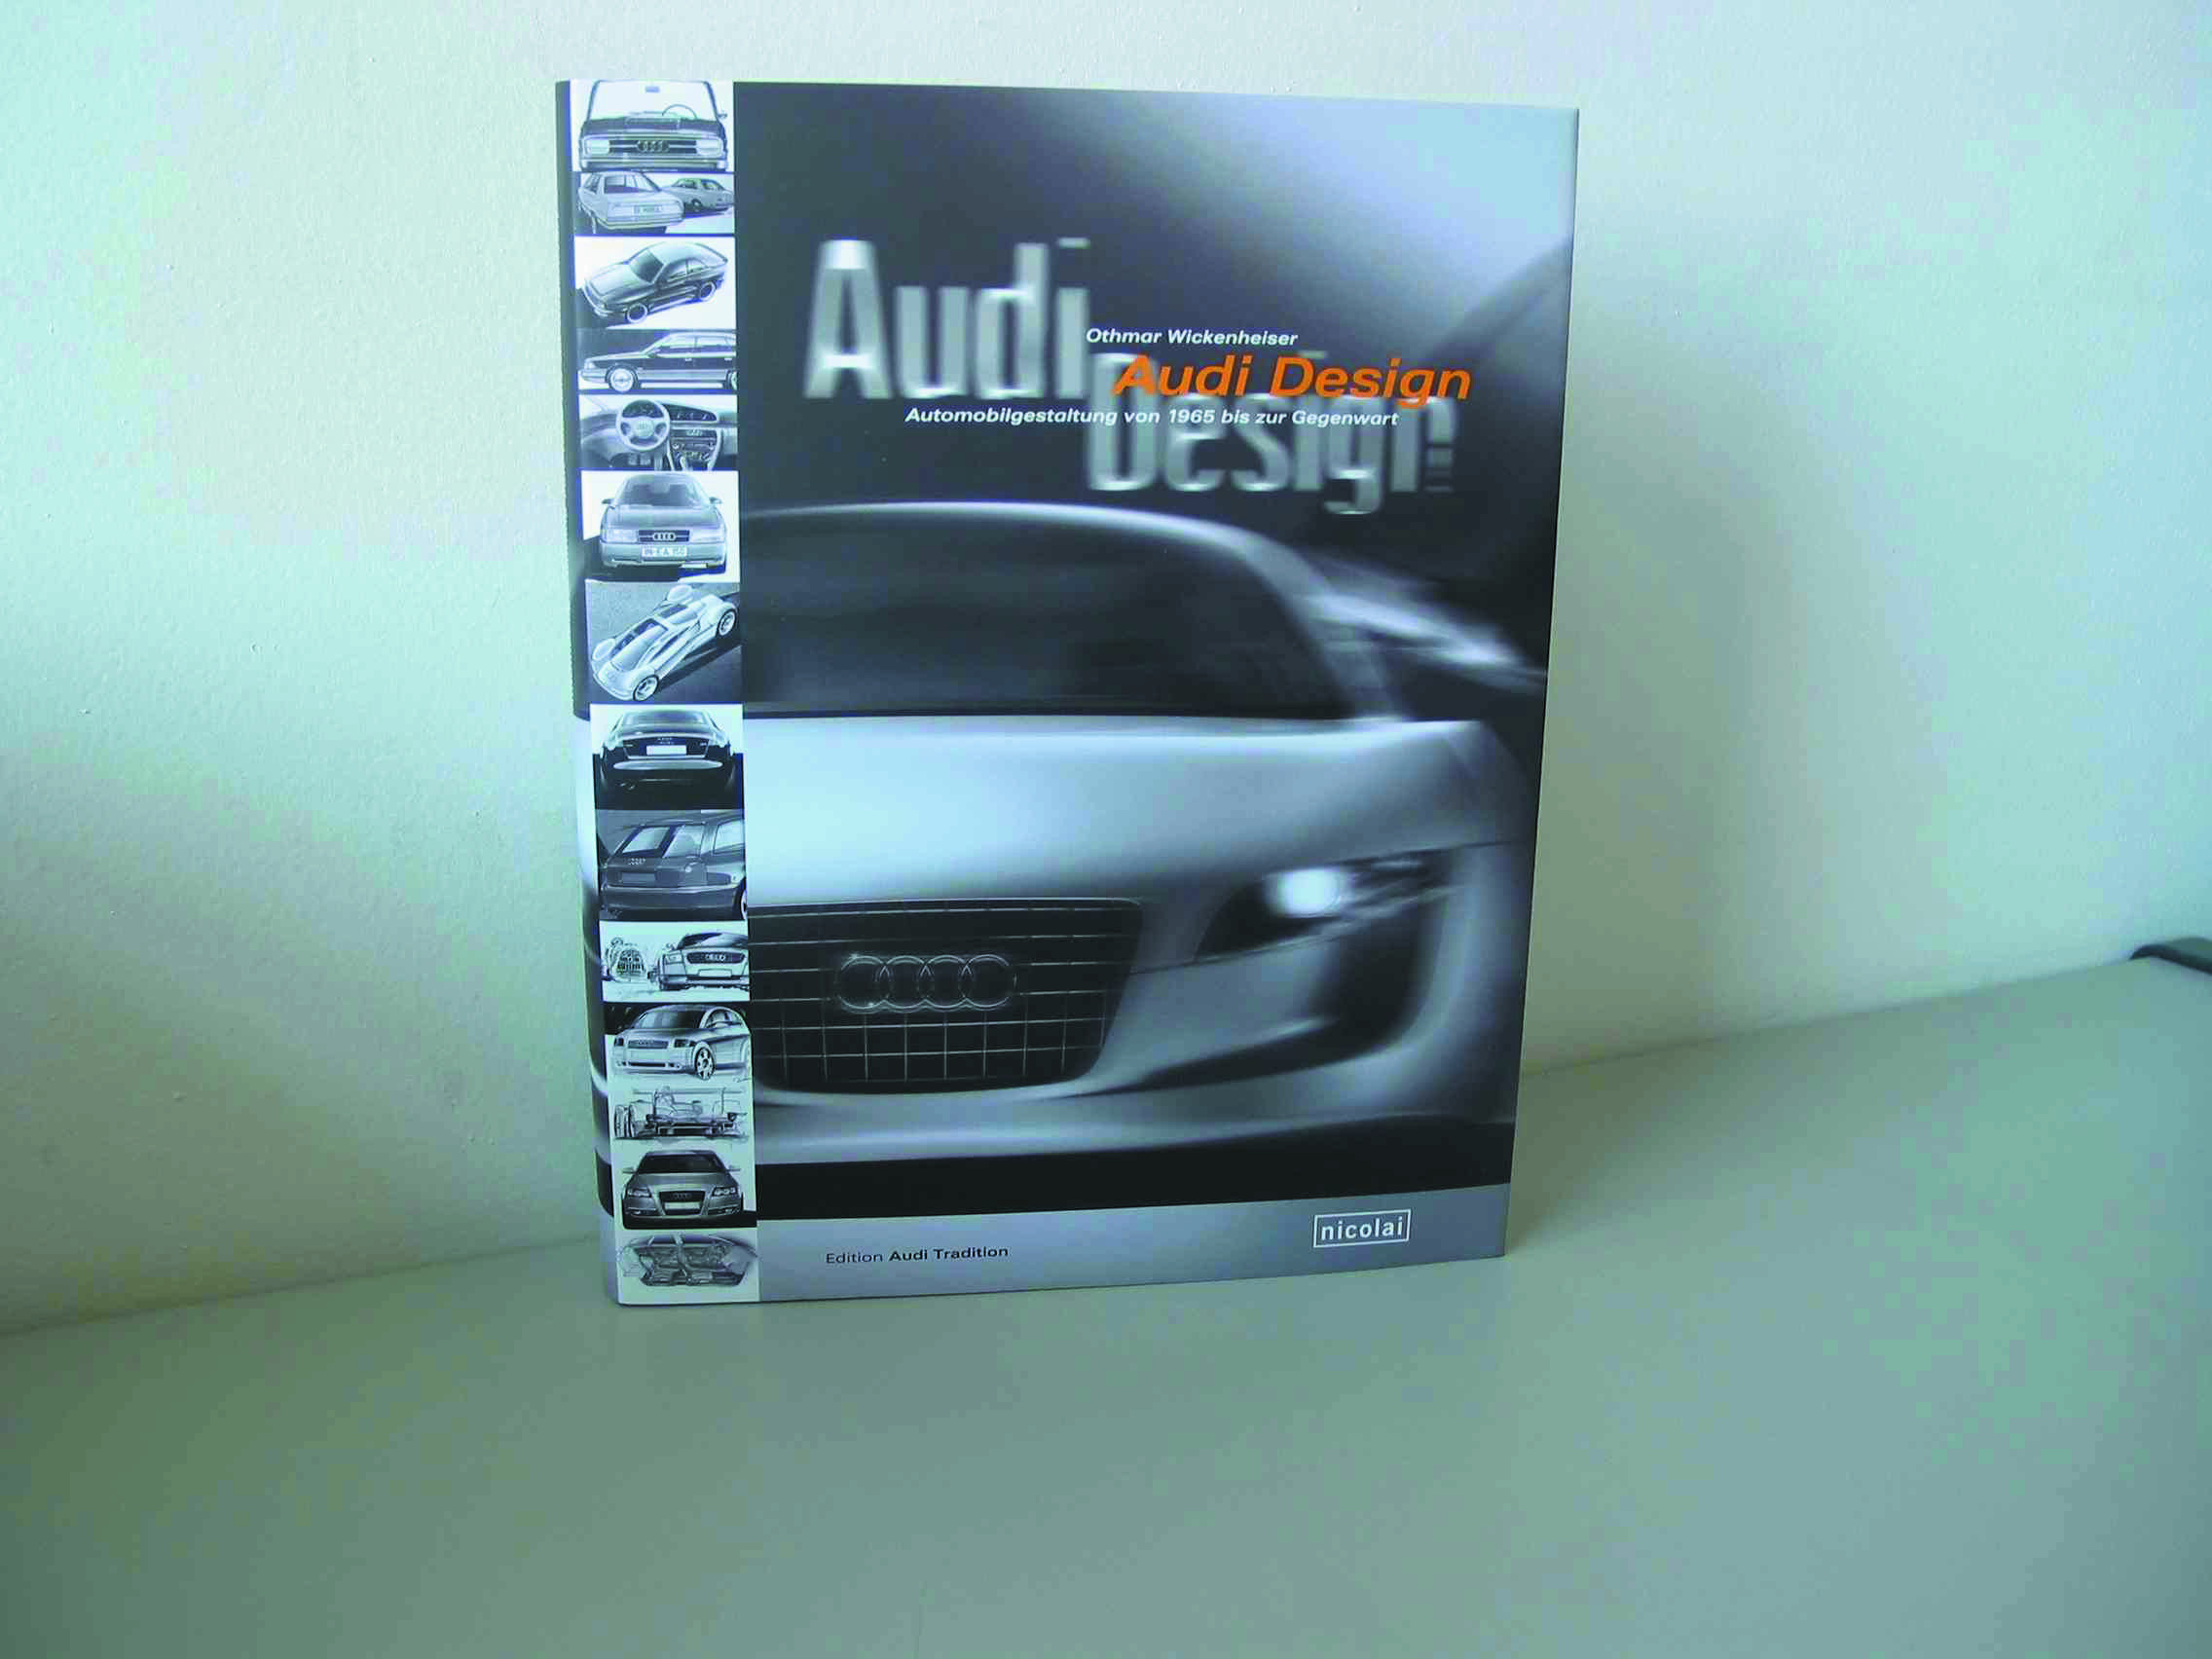 Neuerscheinung in der Edition Audi Tradition: "Audi Design - Automobilgestaltung von 1965 bis zur Gegenwart"